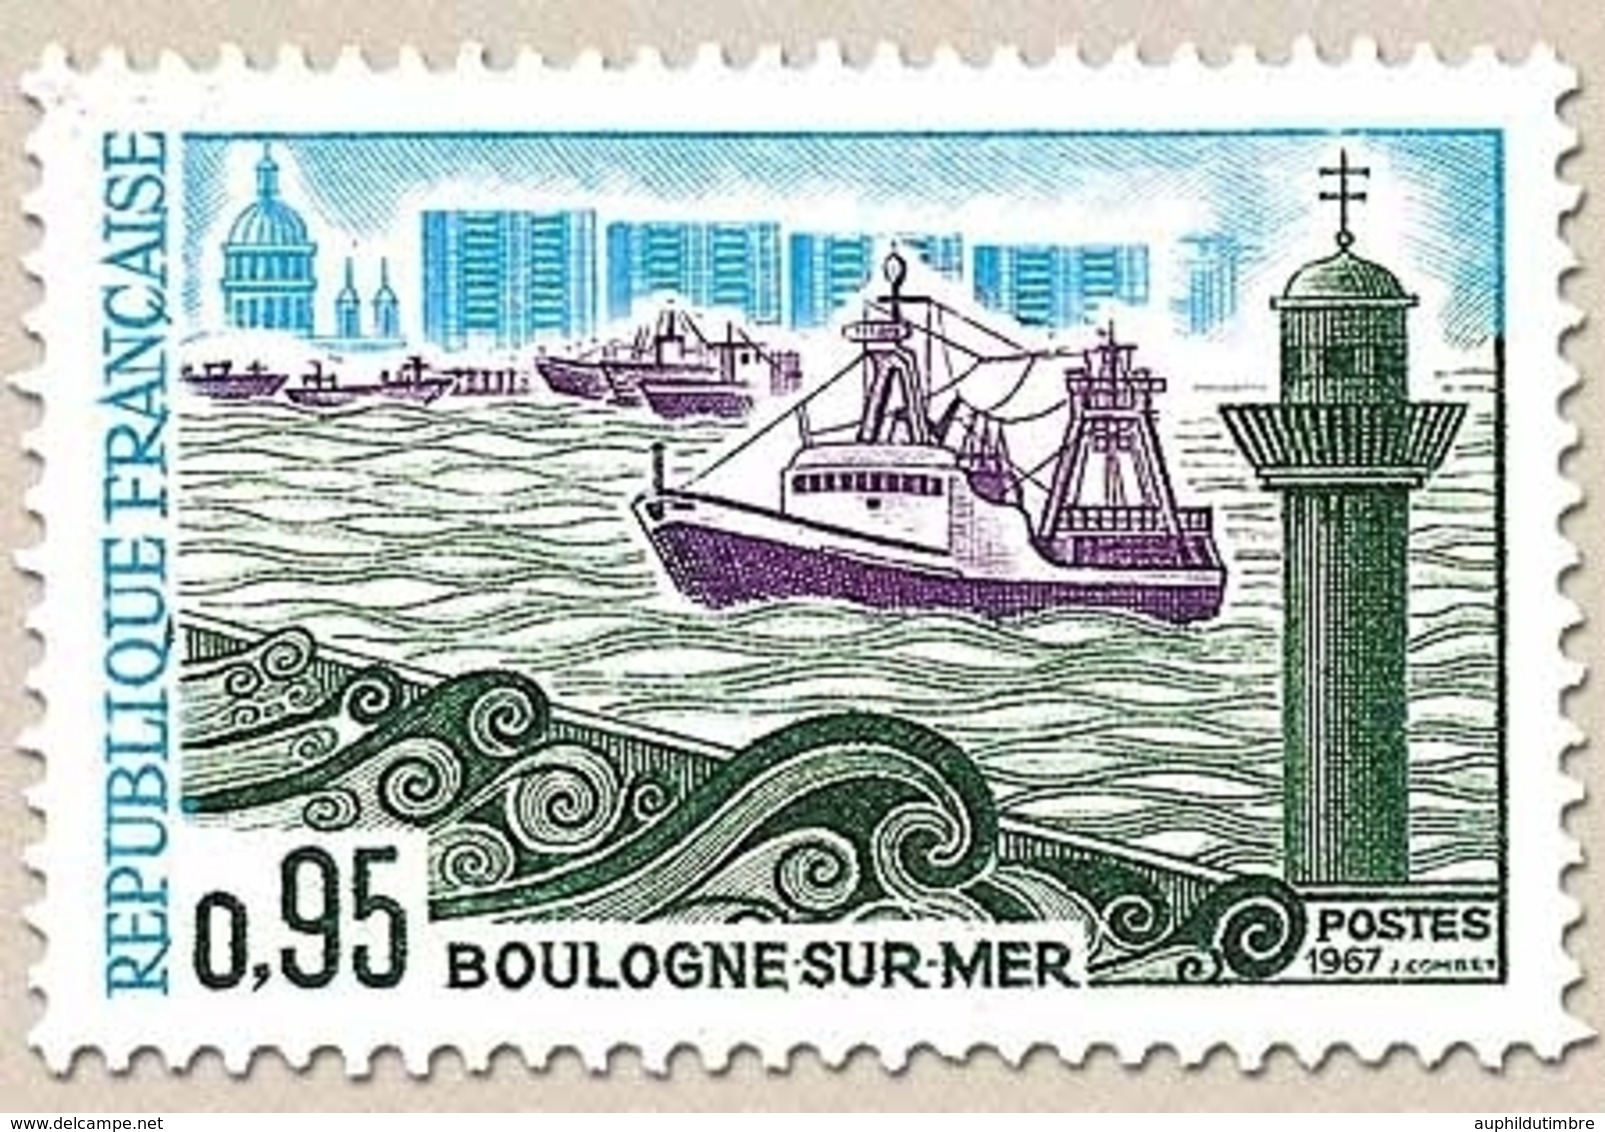 Monuments Et Sites. Boulogne-sur-Mer 95c. Vert, Violet Et Bleu Y1503 - Neufs